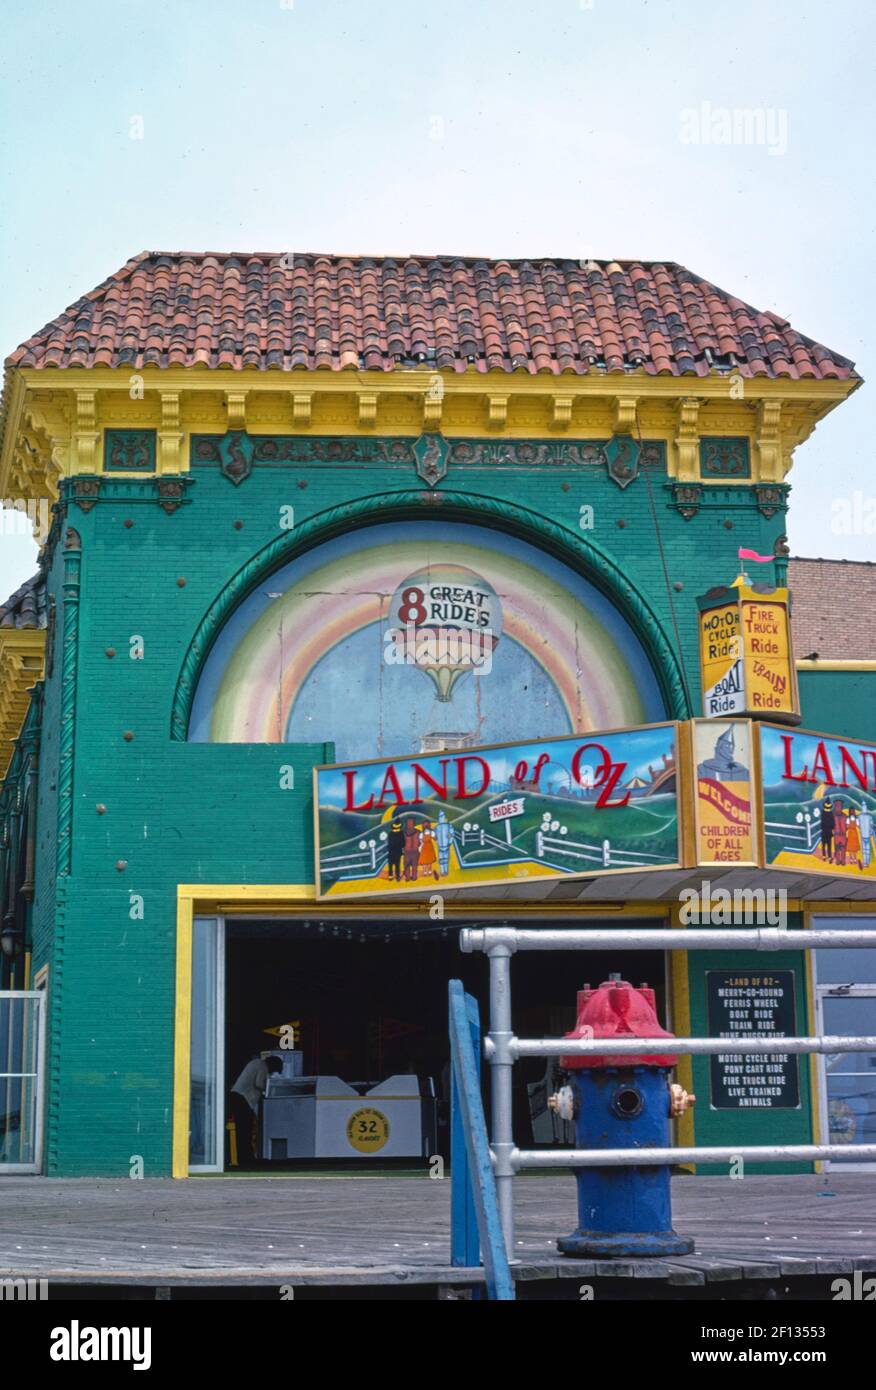 Roxy Theatre - Land of Oz - la promenade - Atlantic City - New Jersey ca. 1978 Banque D'Images